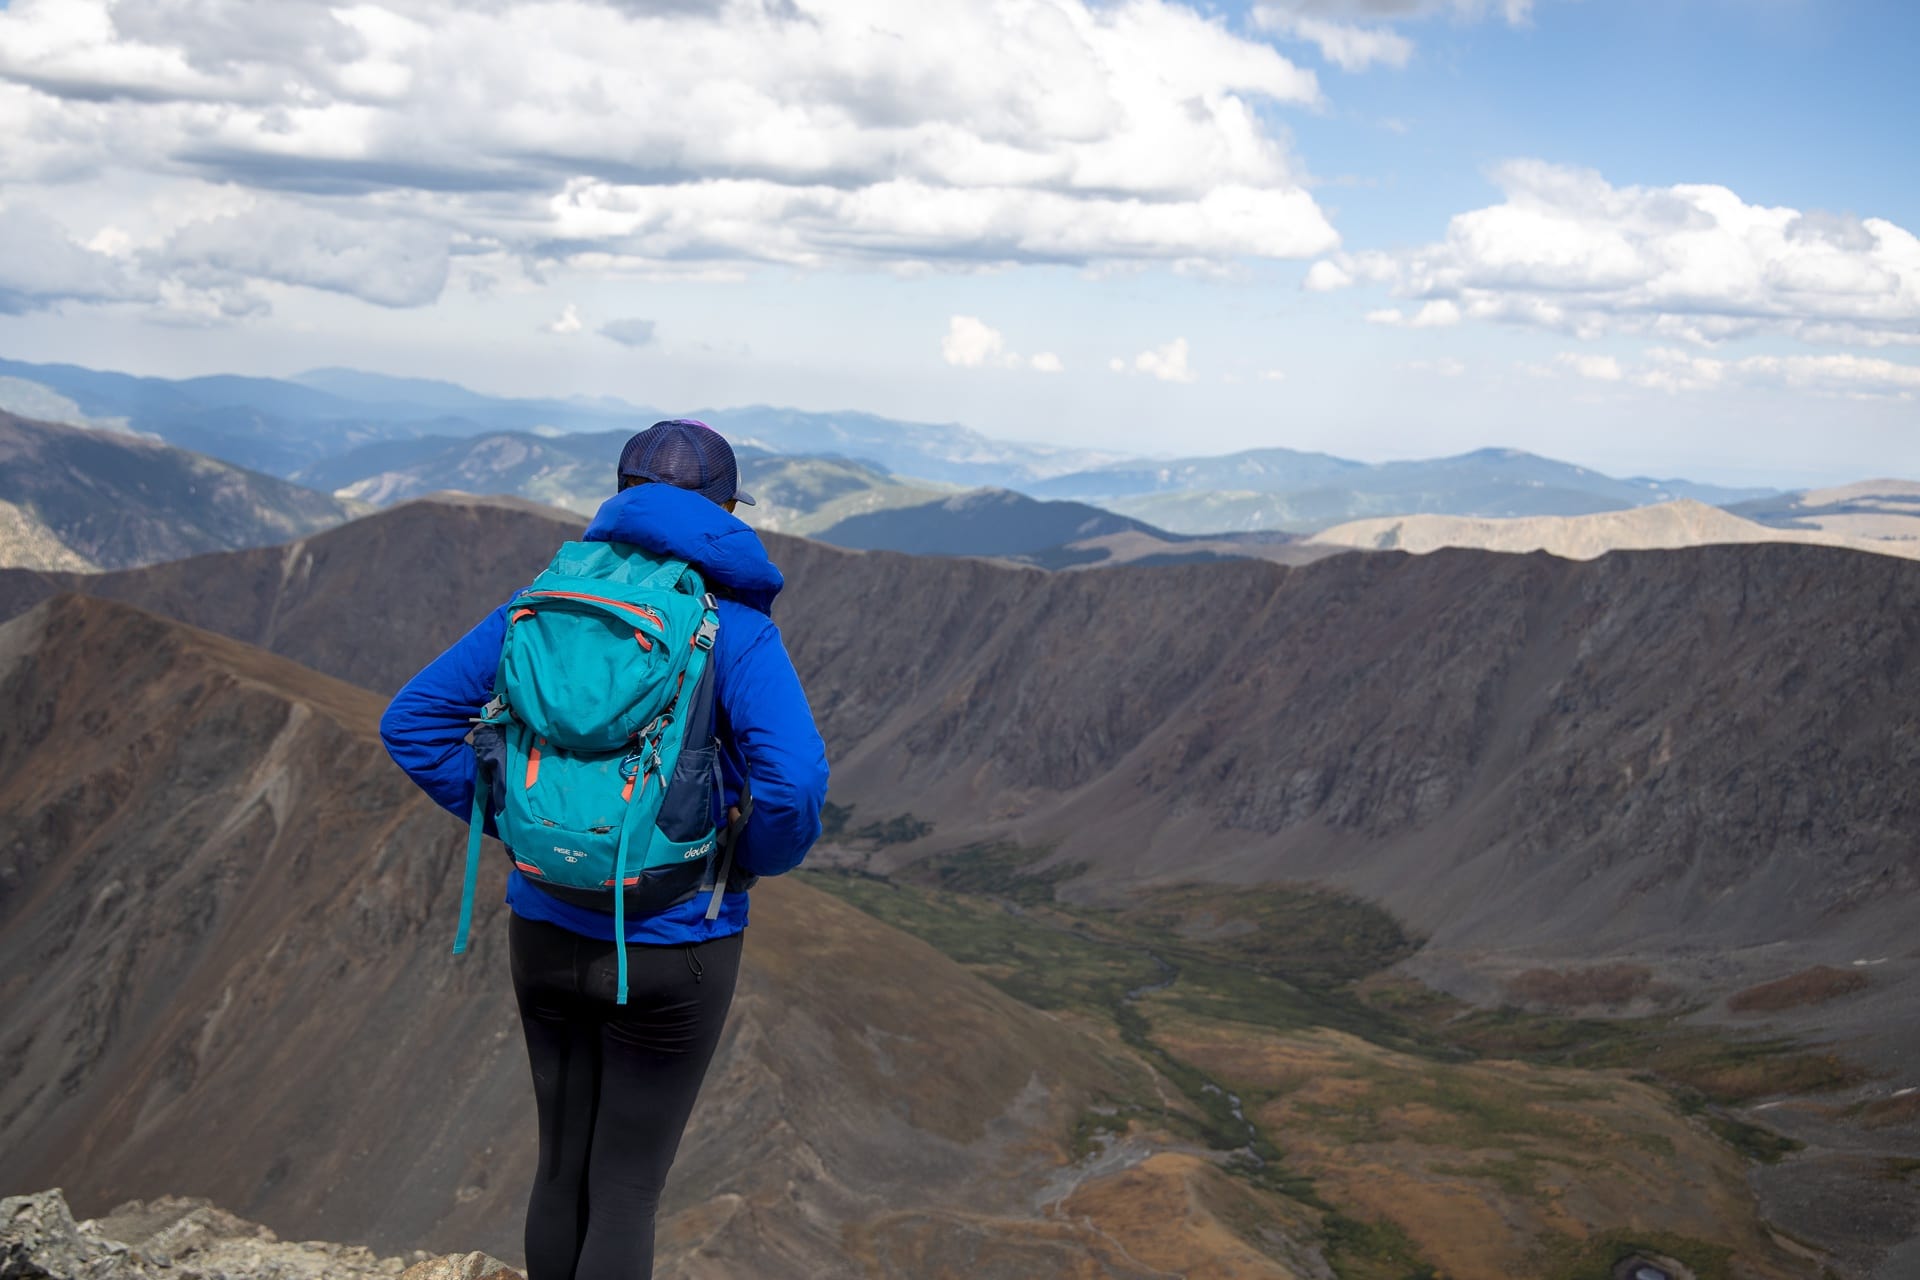 女徒步旅行者站在山顶眺望附近的山脉。她穿着蓝色的夹克和蓝色的徒步旅行背包。